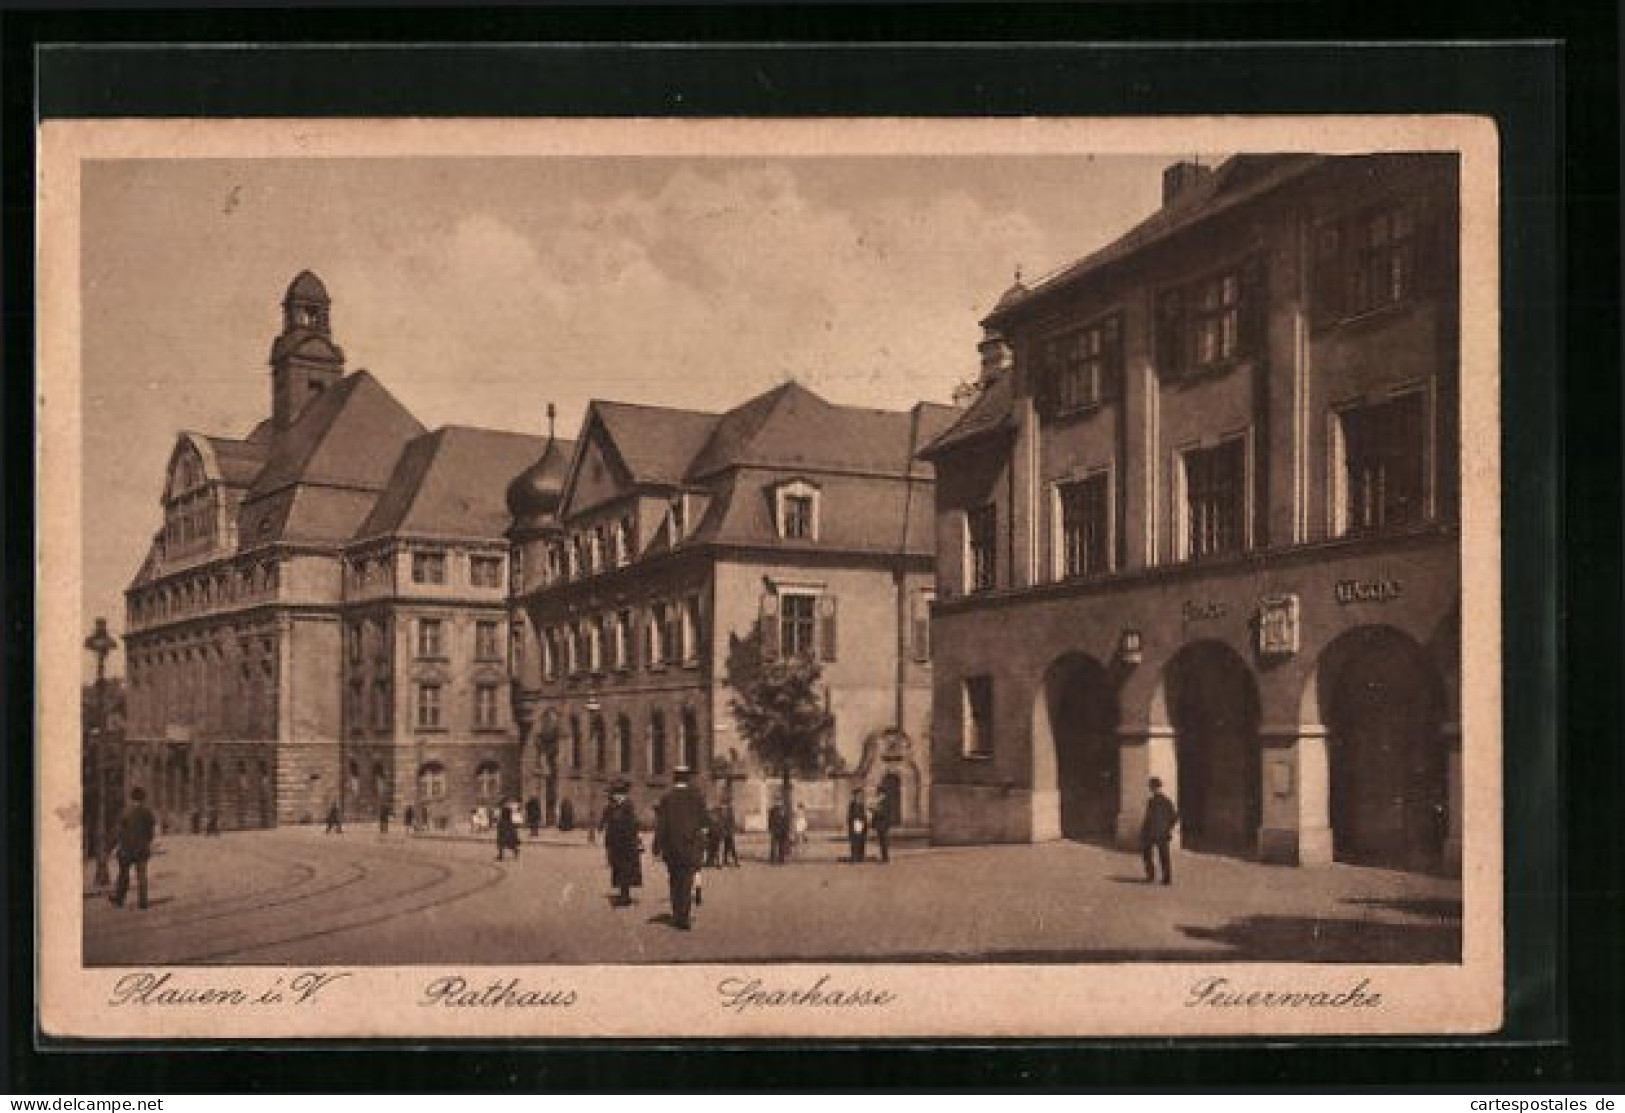 AK Plauen I. V., Rathaus, Sparkasse, Feuerwache  - Firemen